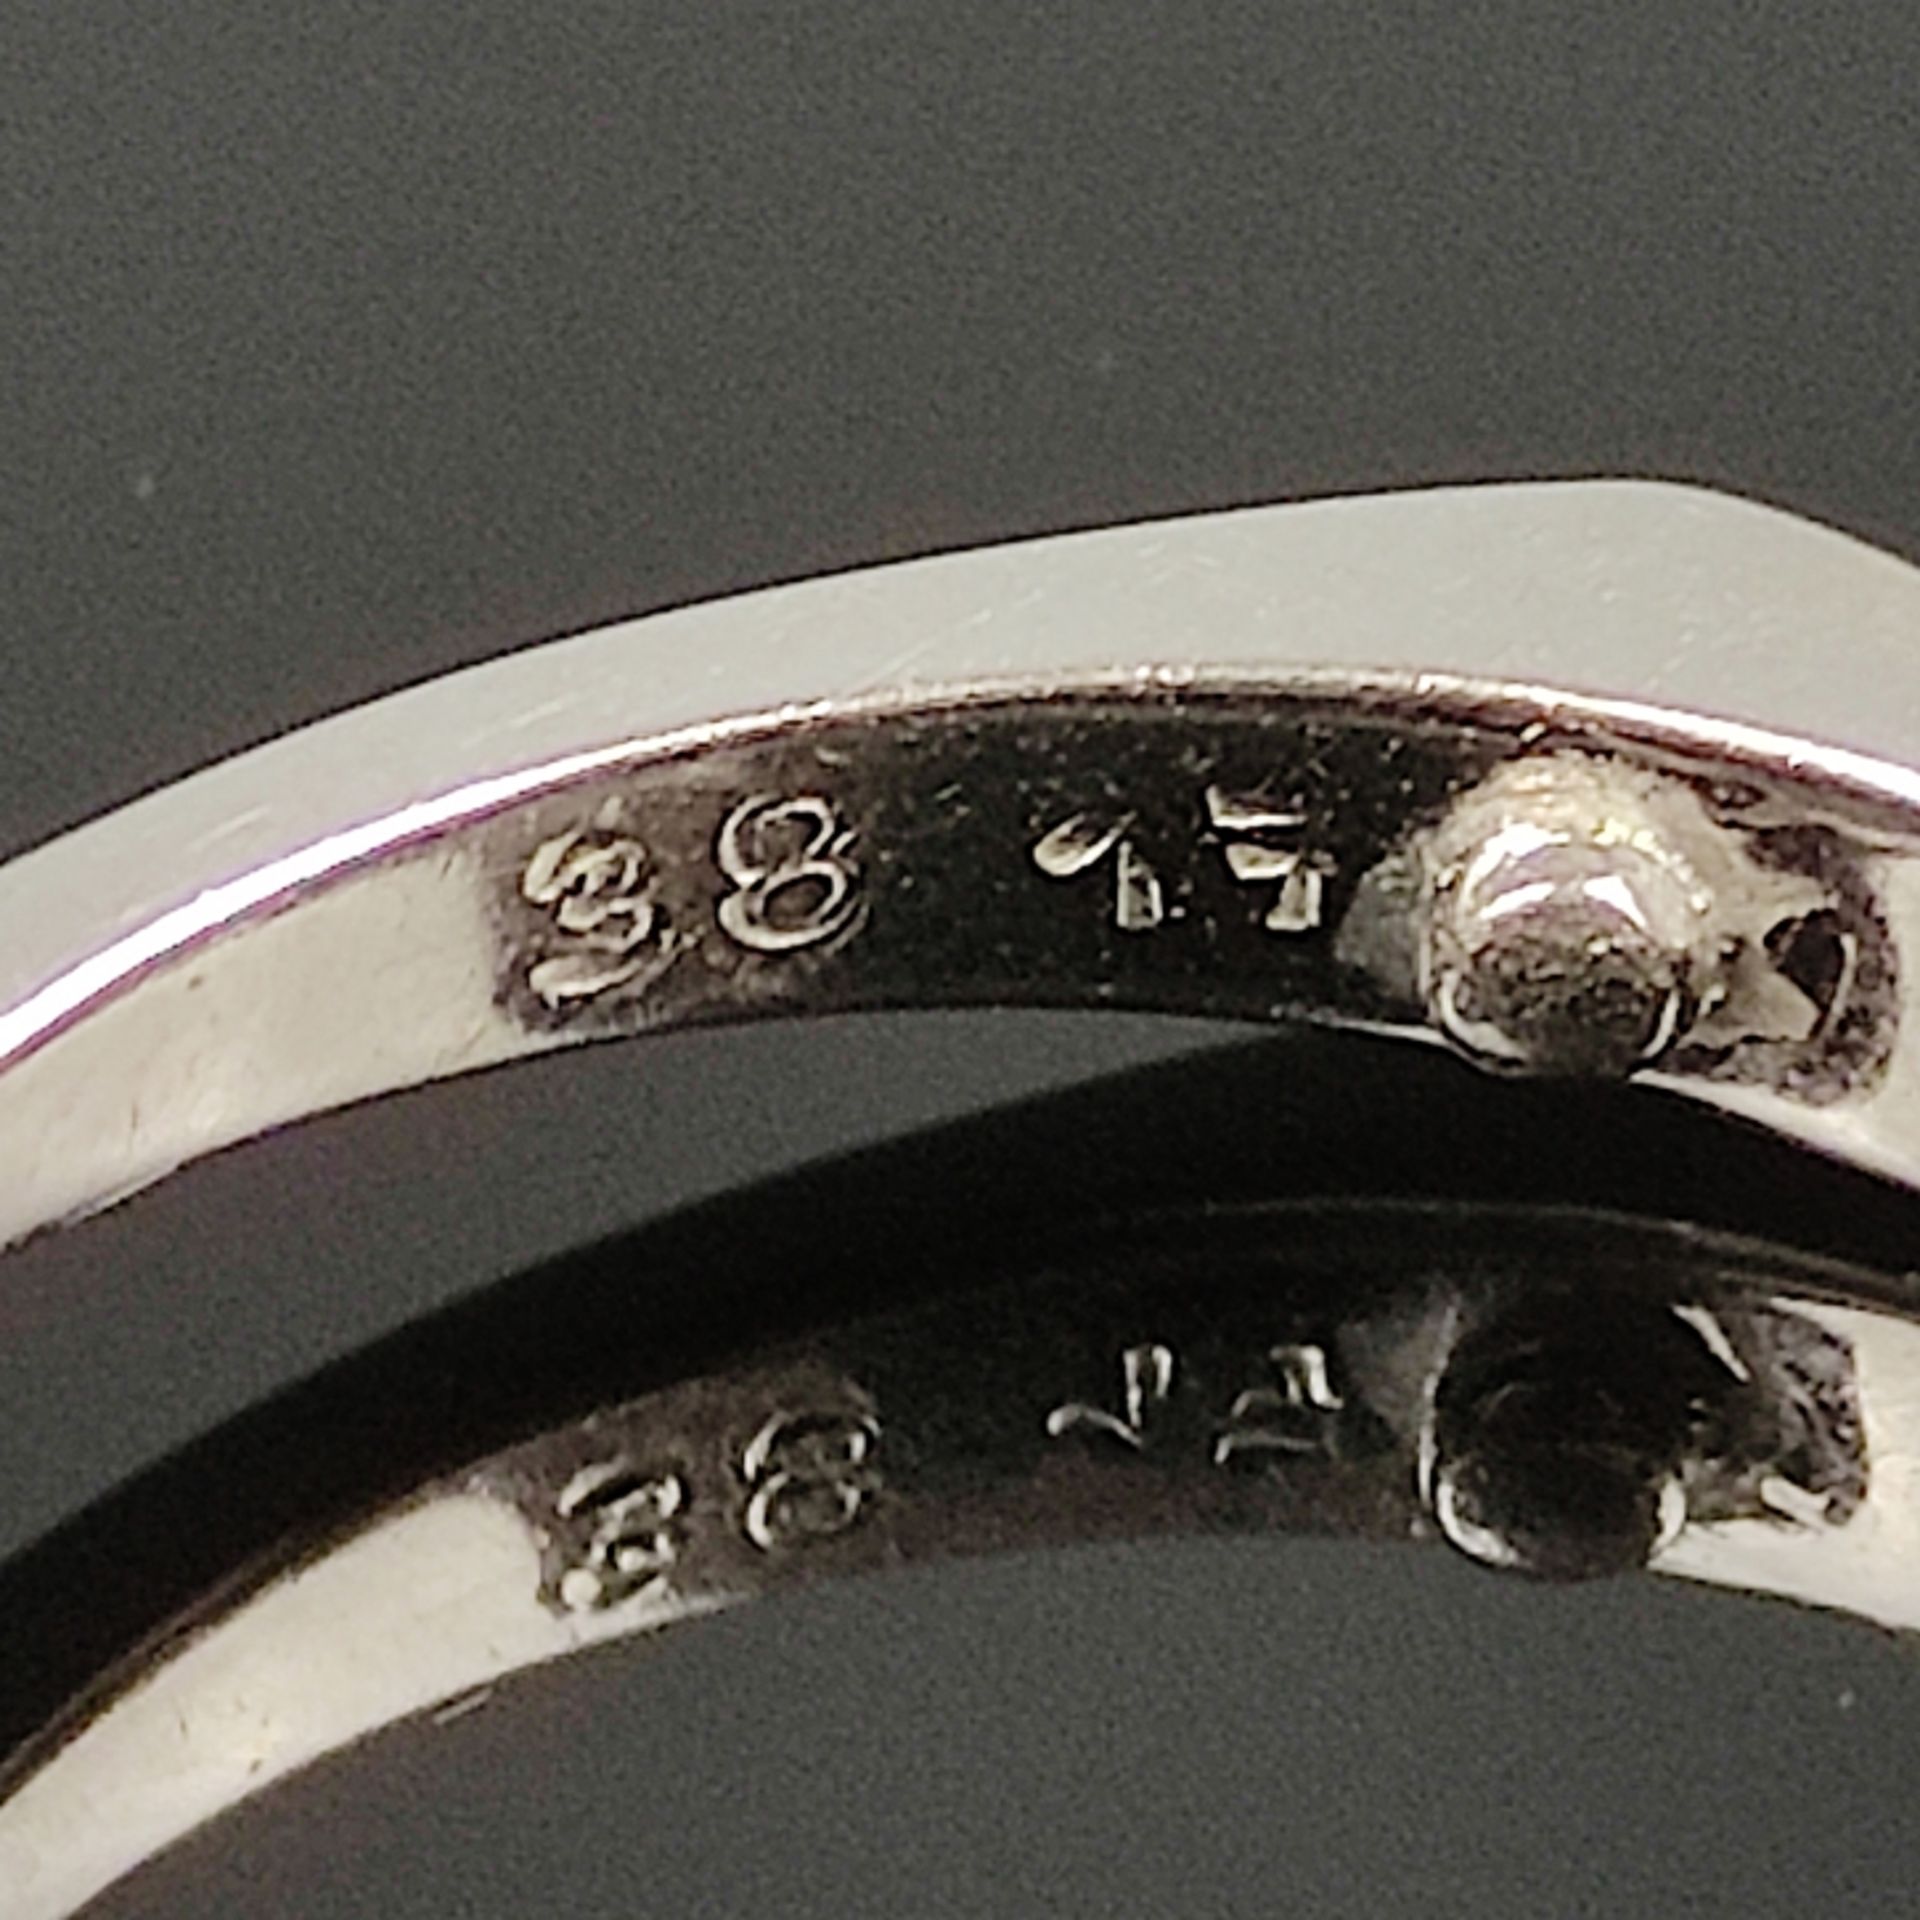 Diamant-Saphir-Ring, 585/14K Weißgold, 3,6g, besetzt mit 6 Diamanten und 4 Saphiren, am unteren End - Bild 4 aus 4